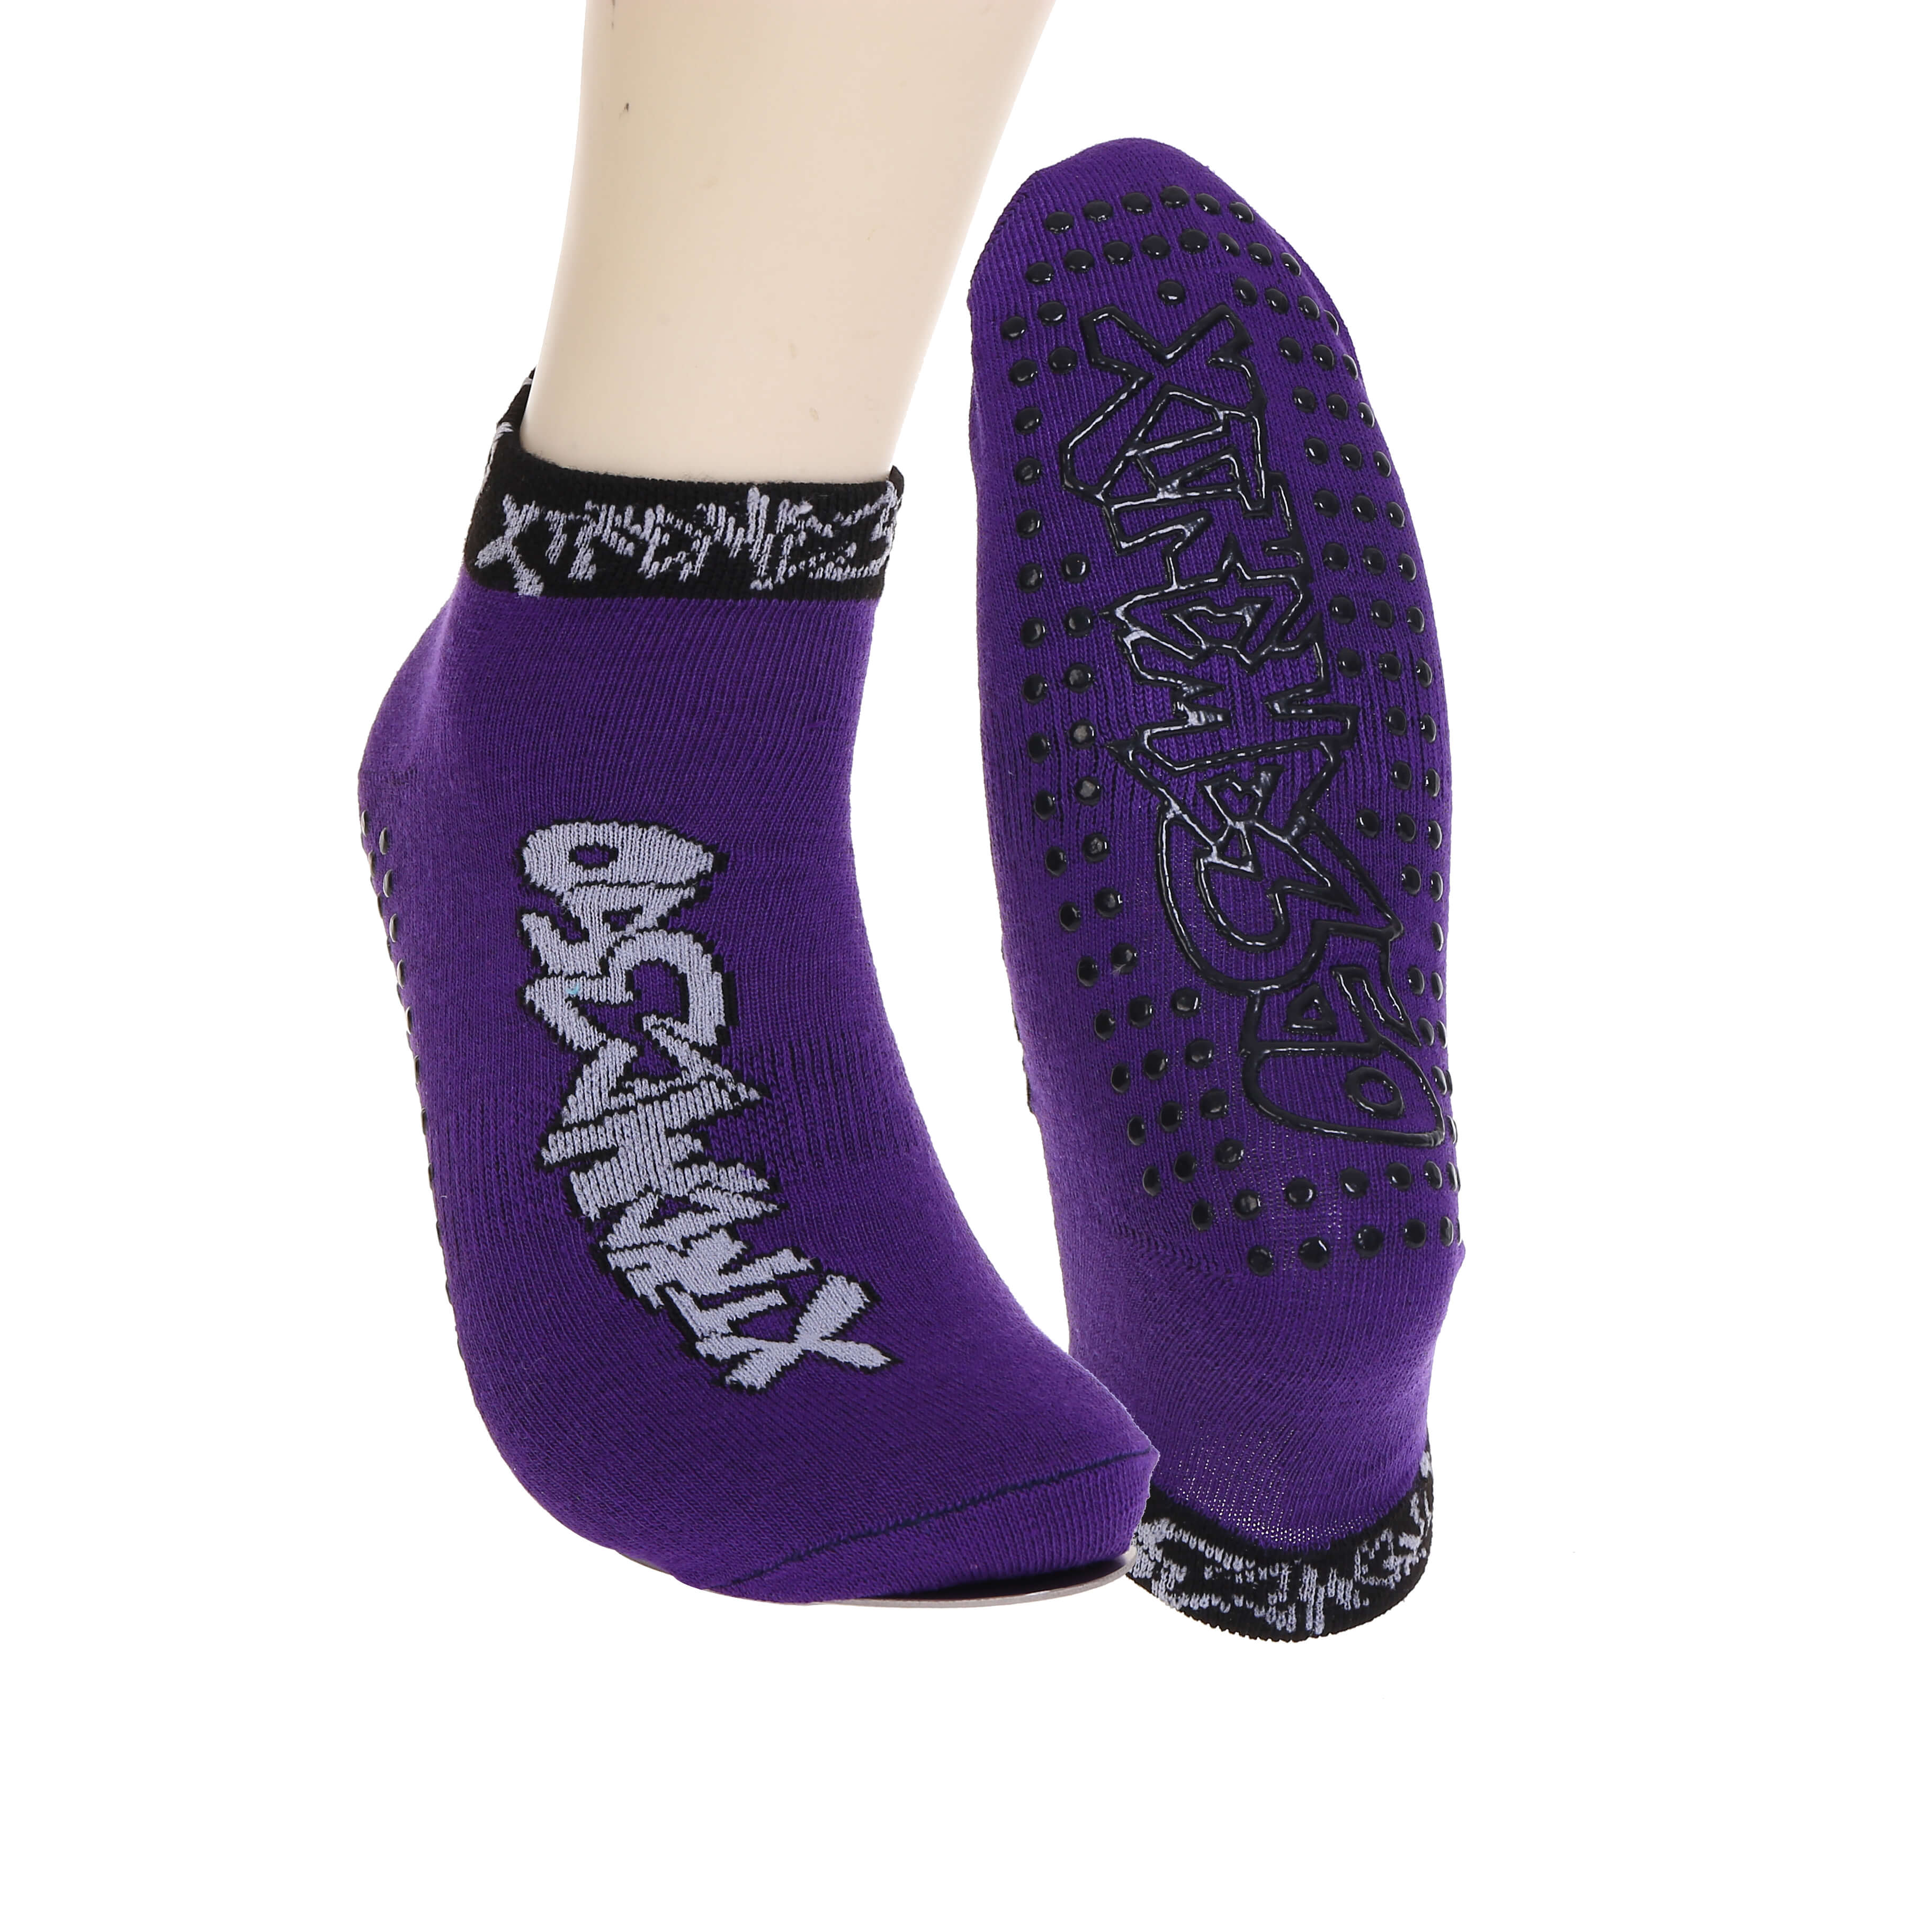 WholeSale Professional Custom Anti-Slip  Trampoline Socks for Trampoline Park